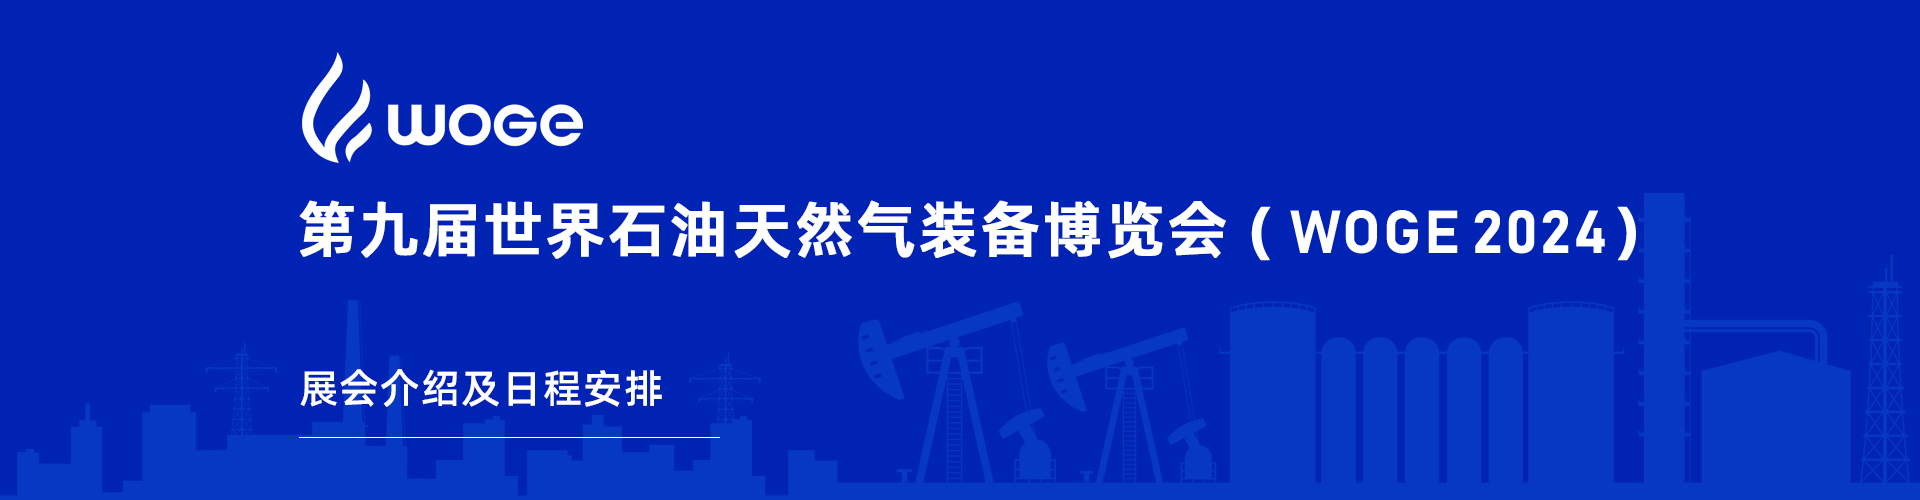 第9届世界石油天然气装备博览会(WOGE2024)展会介绍及日程安排